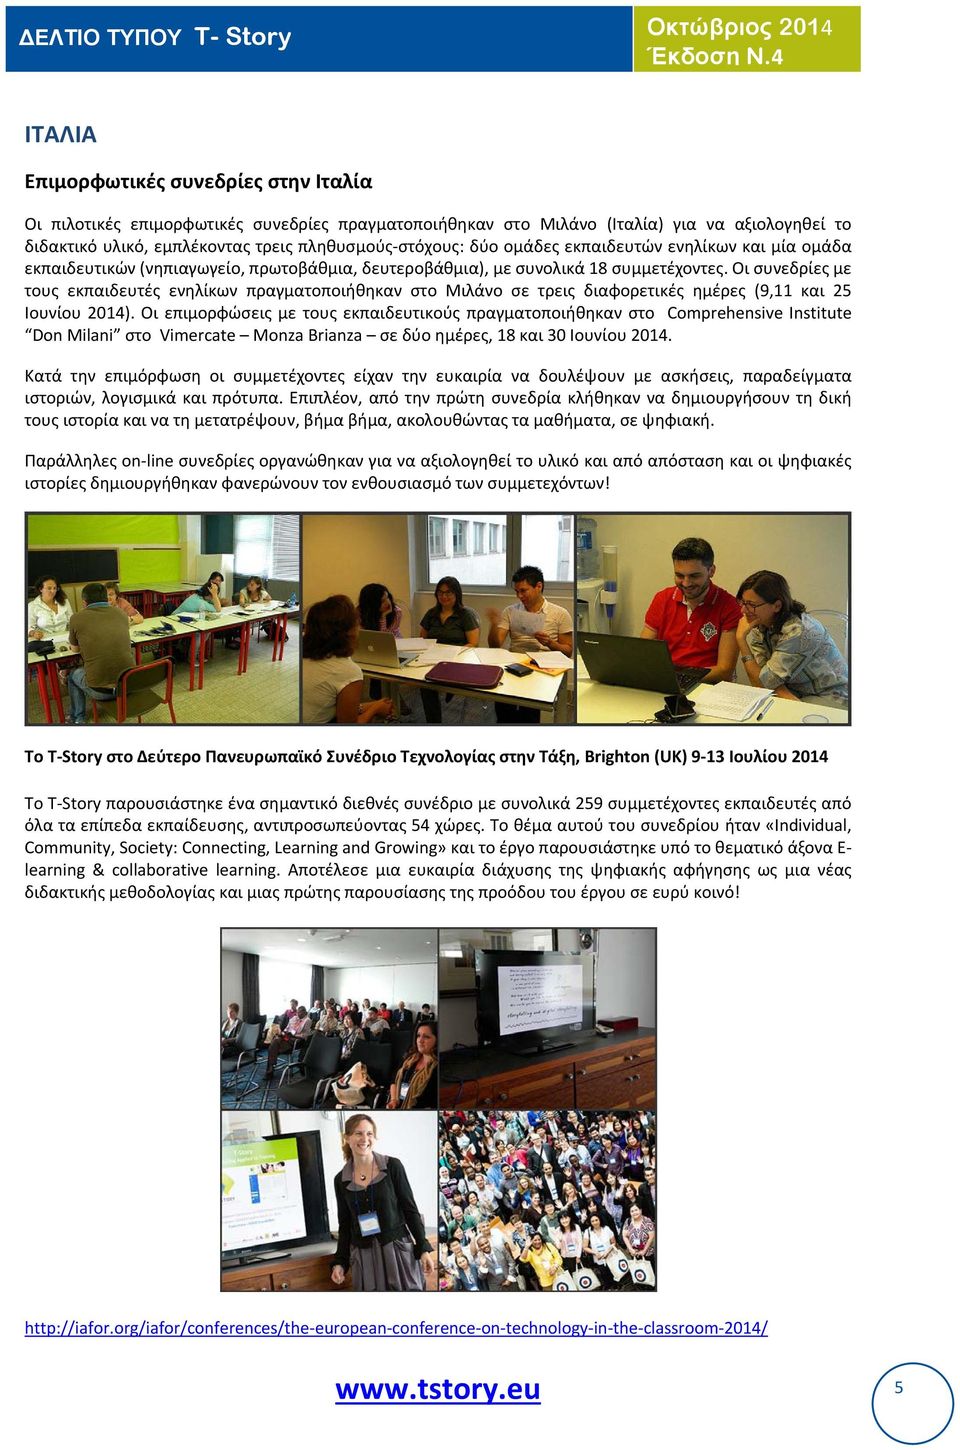 Οι συνεδρίες με τους εκπαιδευτές ενηλίκων πραγματοποιήθηκαν στο Μιλάνο σε τρεις διαφορετικές ημέρες (9,11 και 25 Ιουνίου 2014).